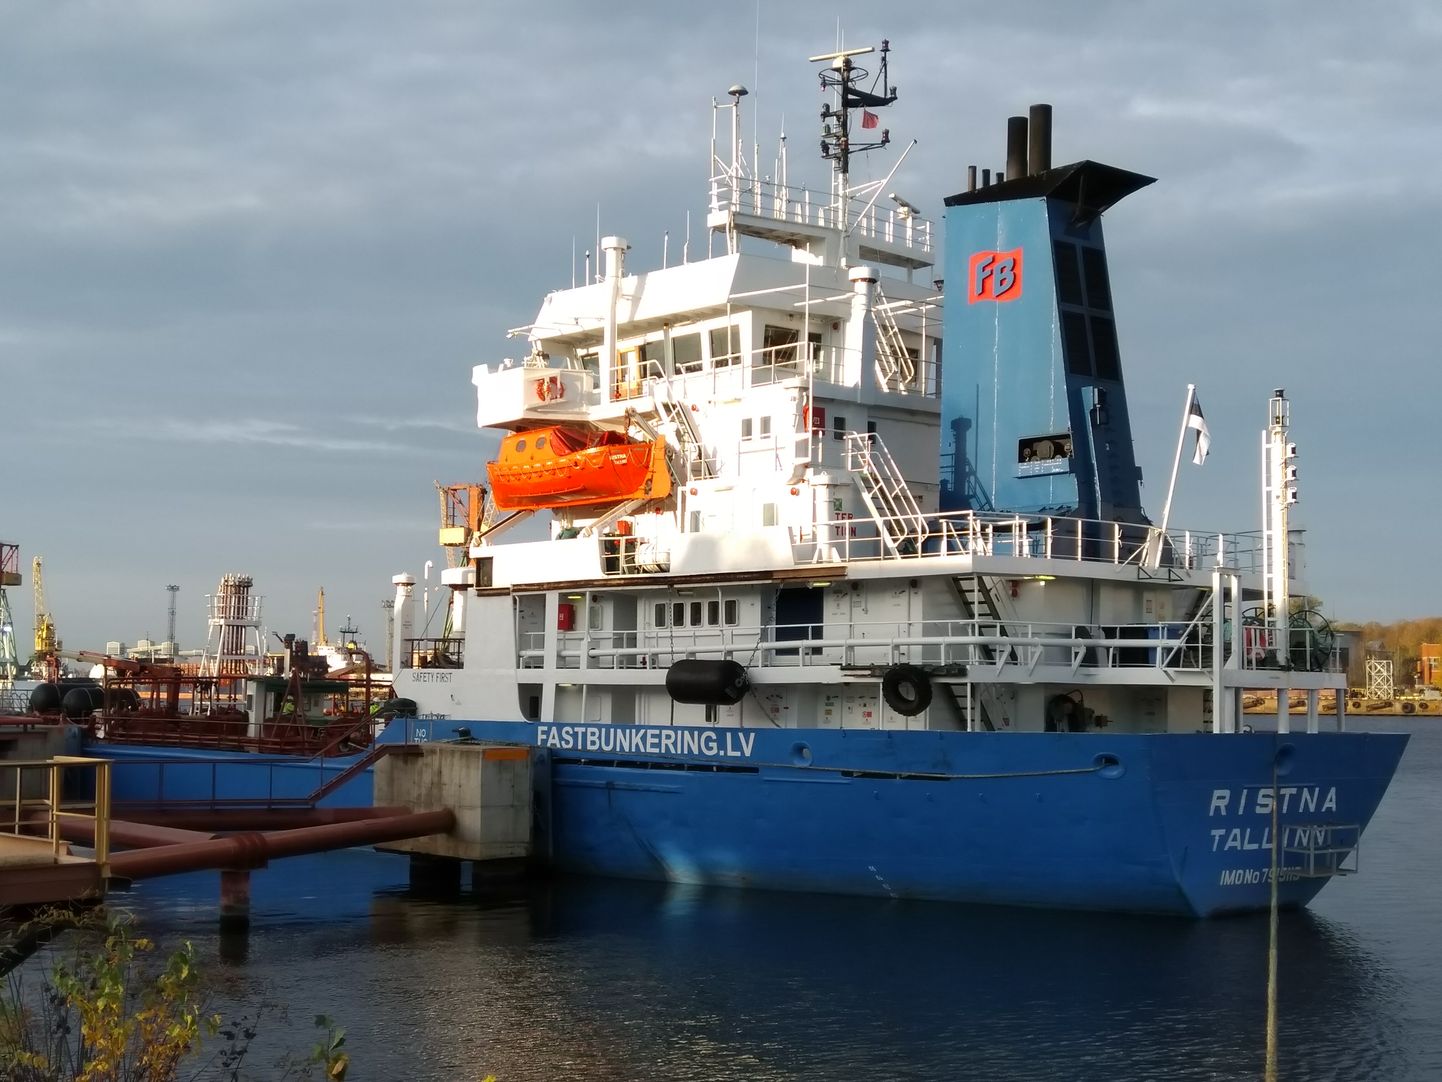 Tanker Ristna on 1980. aastal ehitatud 98 meetri pikkune laev, mille reeder valis oktoobris 2020 lipuriigiks Eesti. STS-operatsioonides ei ole Ristna Eesti lipu all sõites osalenud.